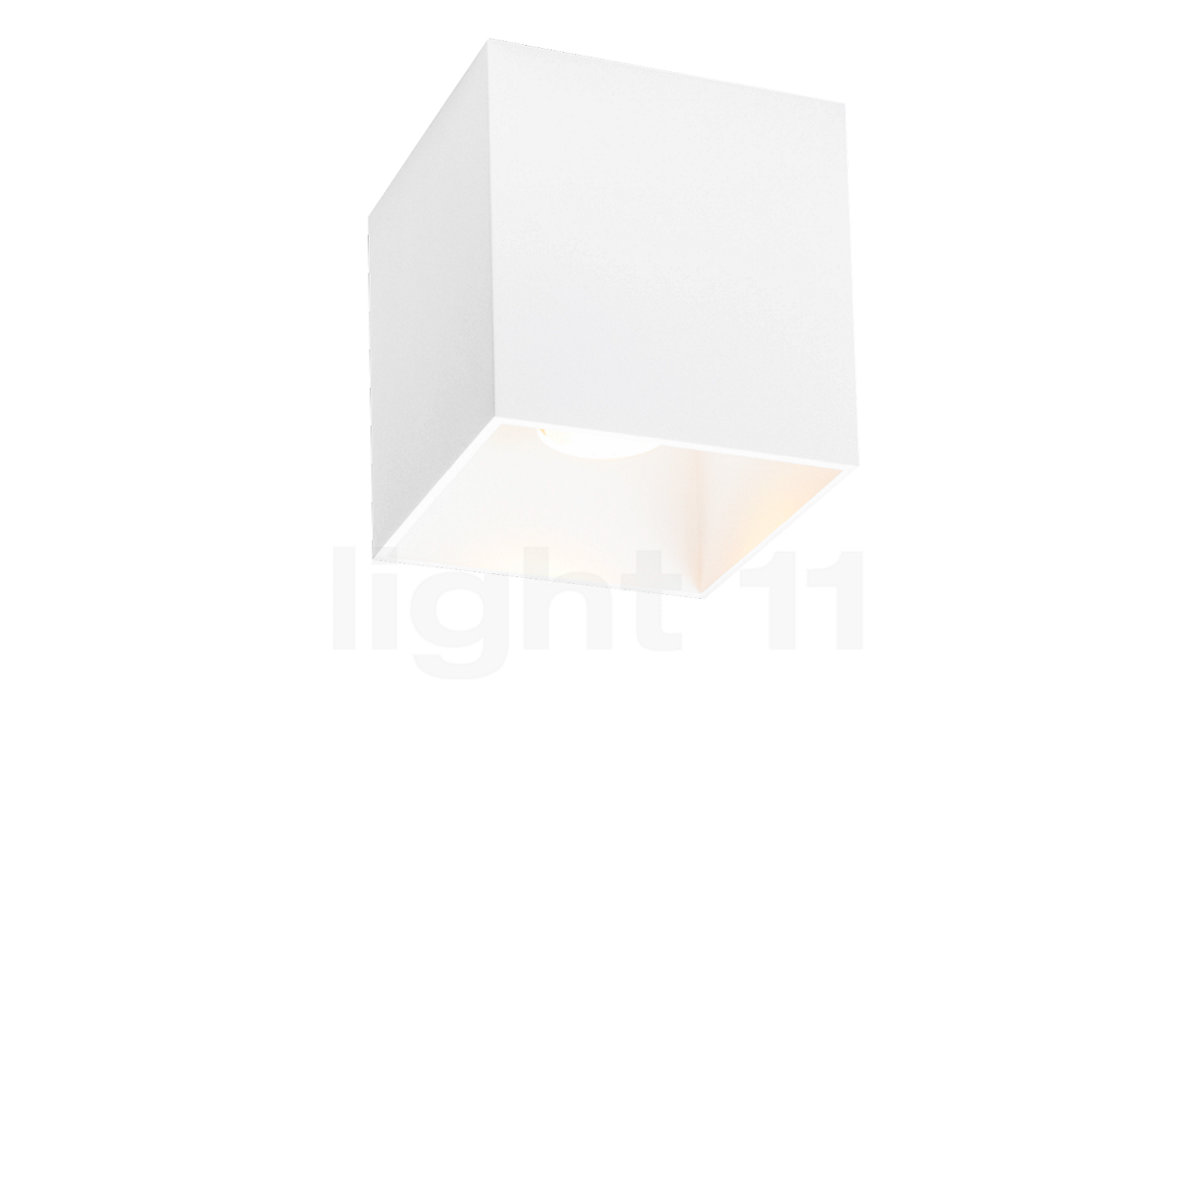 Schiereiland Pebish Uiterlijk Buy Wever & Ducré Box Ceiling Light Outdoor LED at